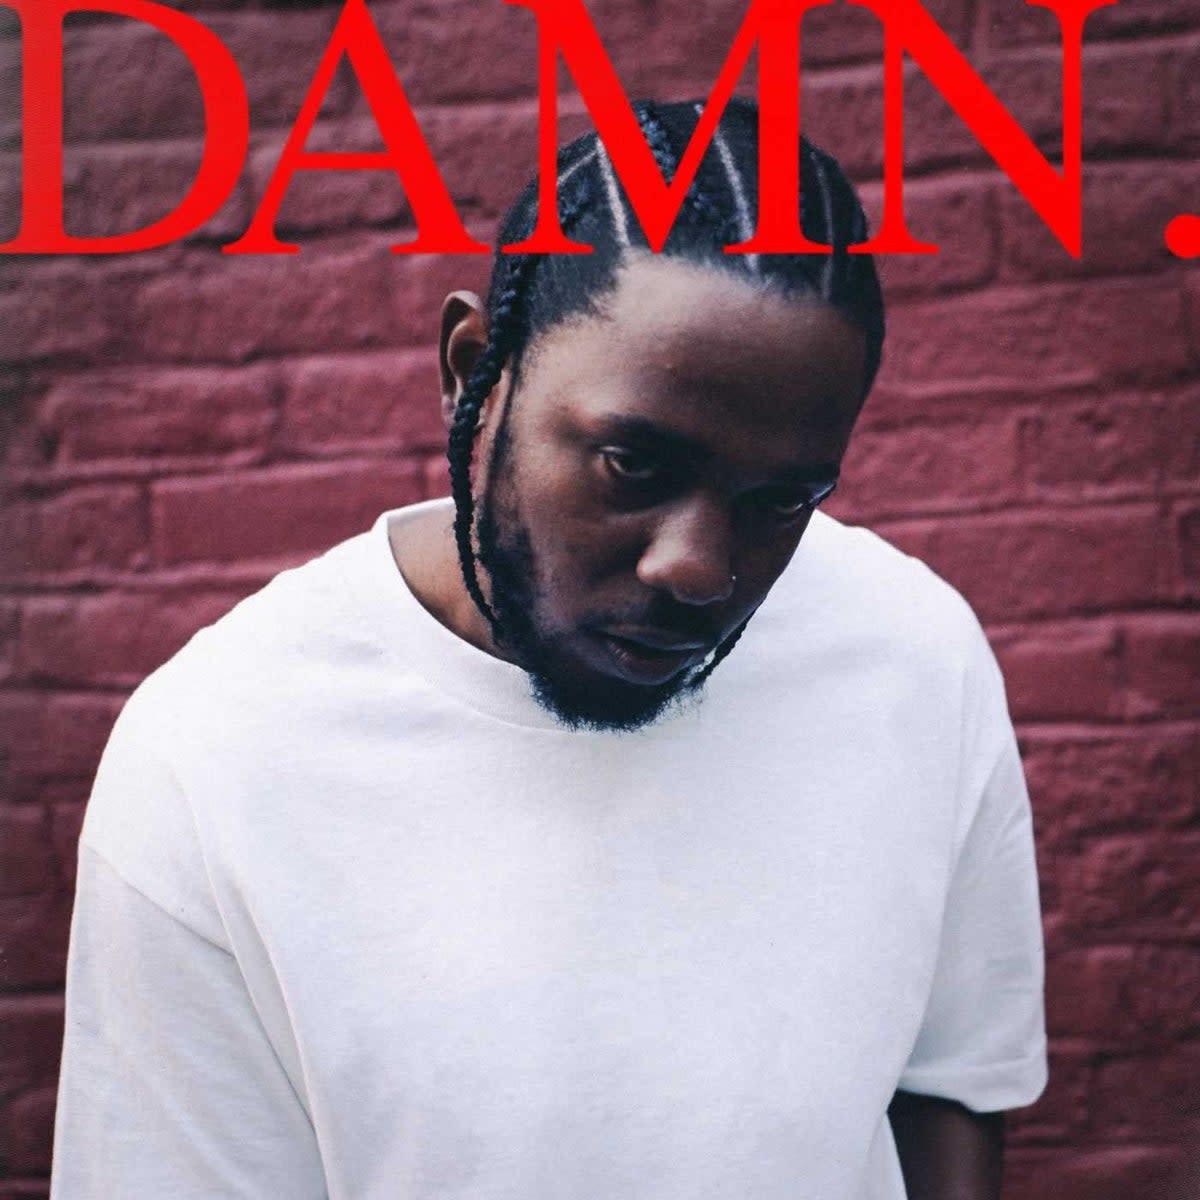 Artwork for Kendrick Lamar’s album ‘DAMN.’ (Kendrick Lamar)